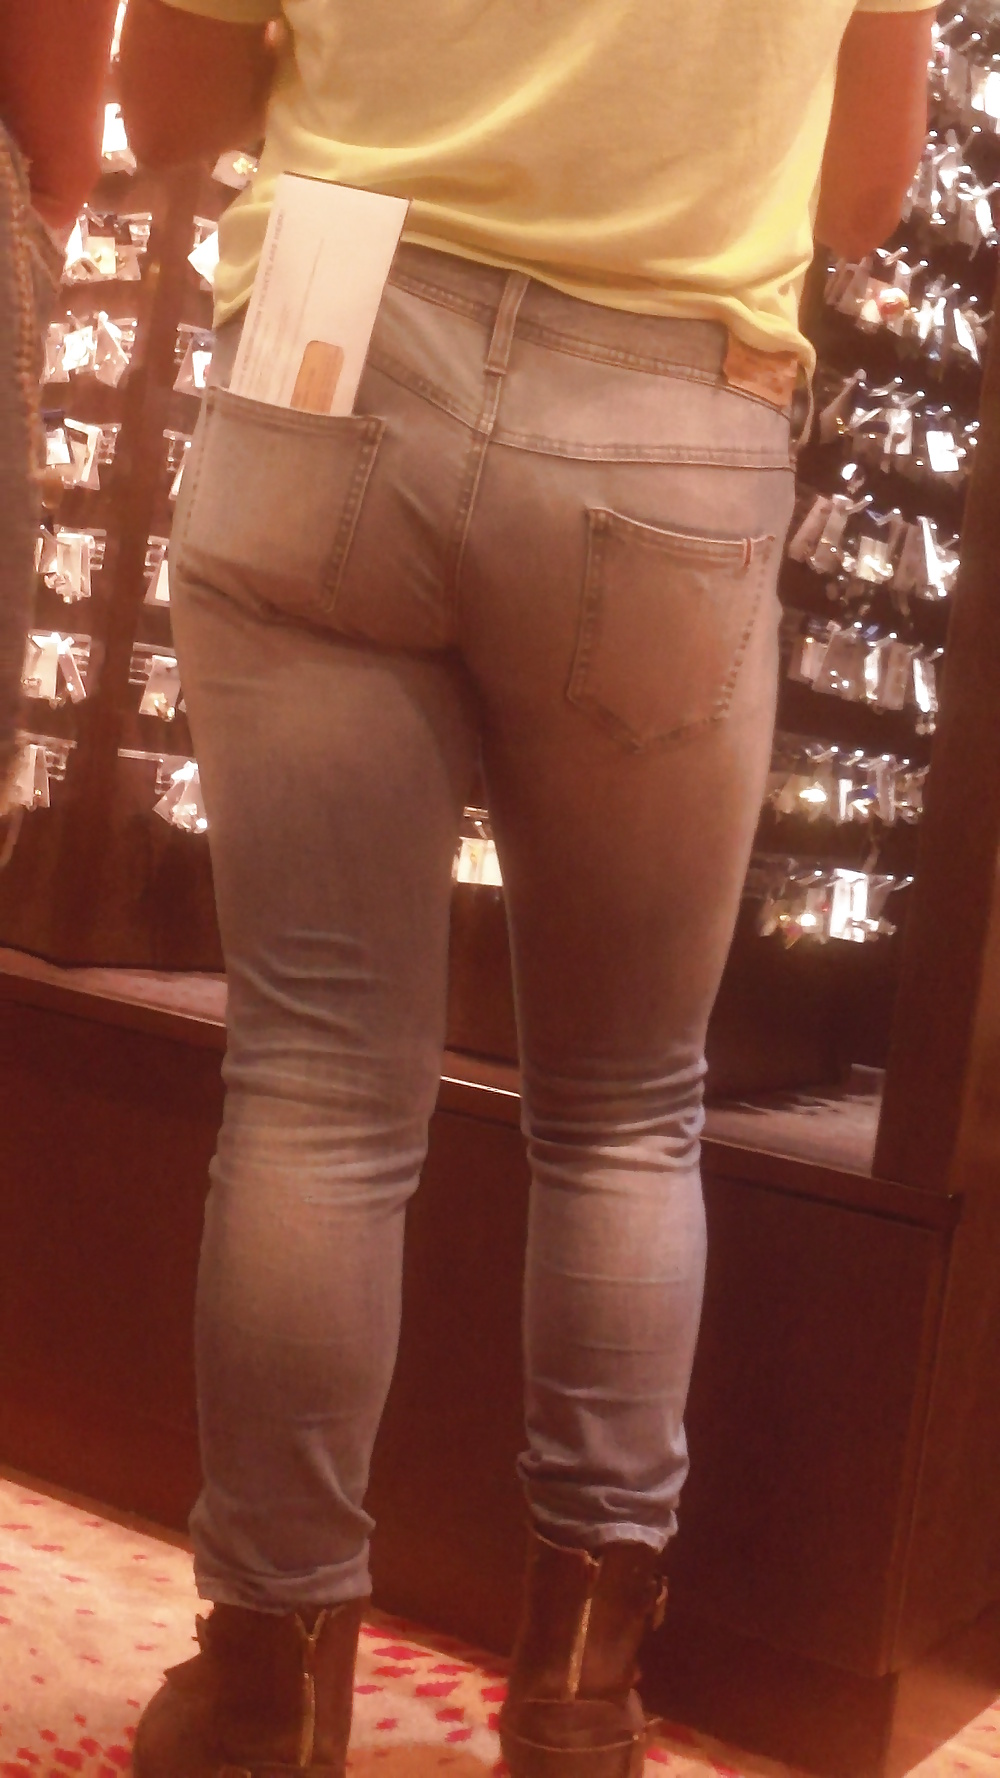 Popular teen girls ass & butt in jeans part 4  #26739000